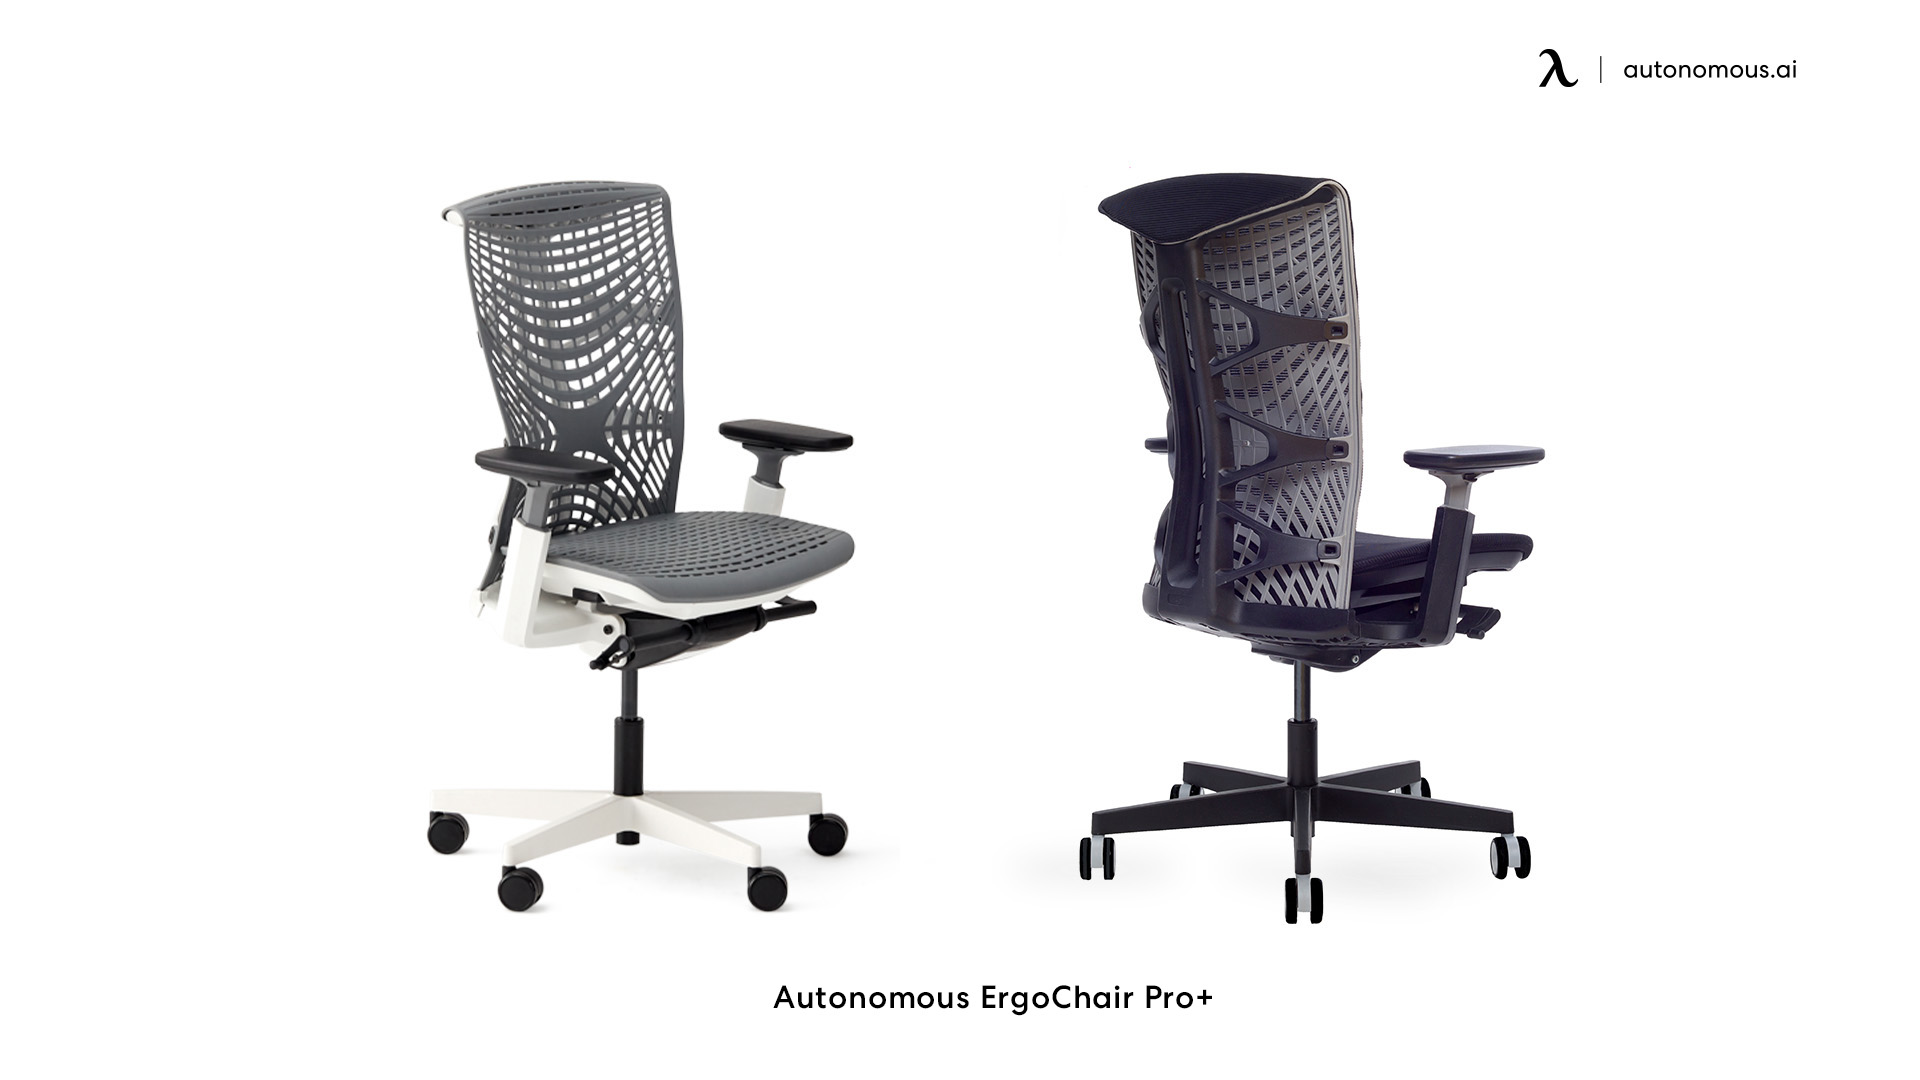 ErgoChair Pro+ adjustable height chair